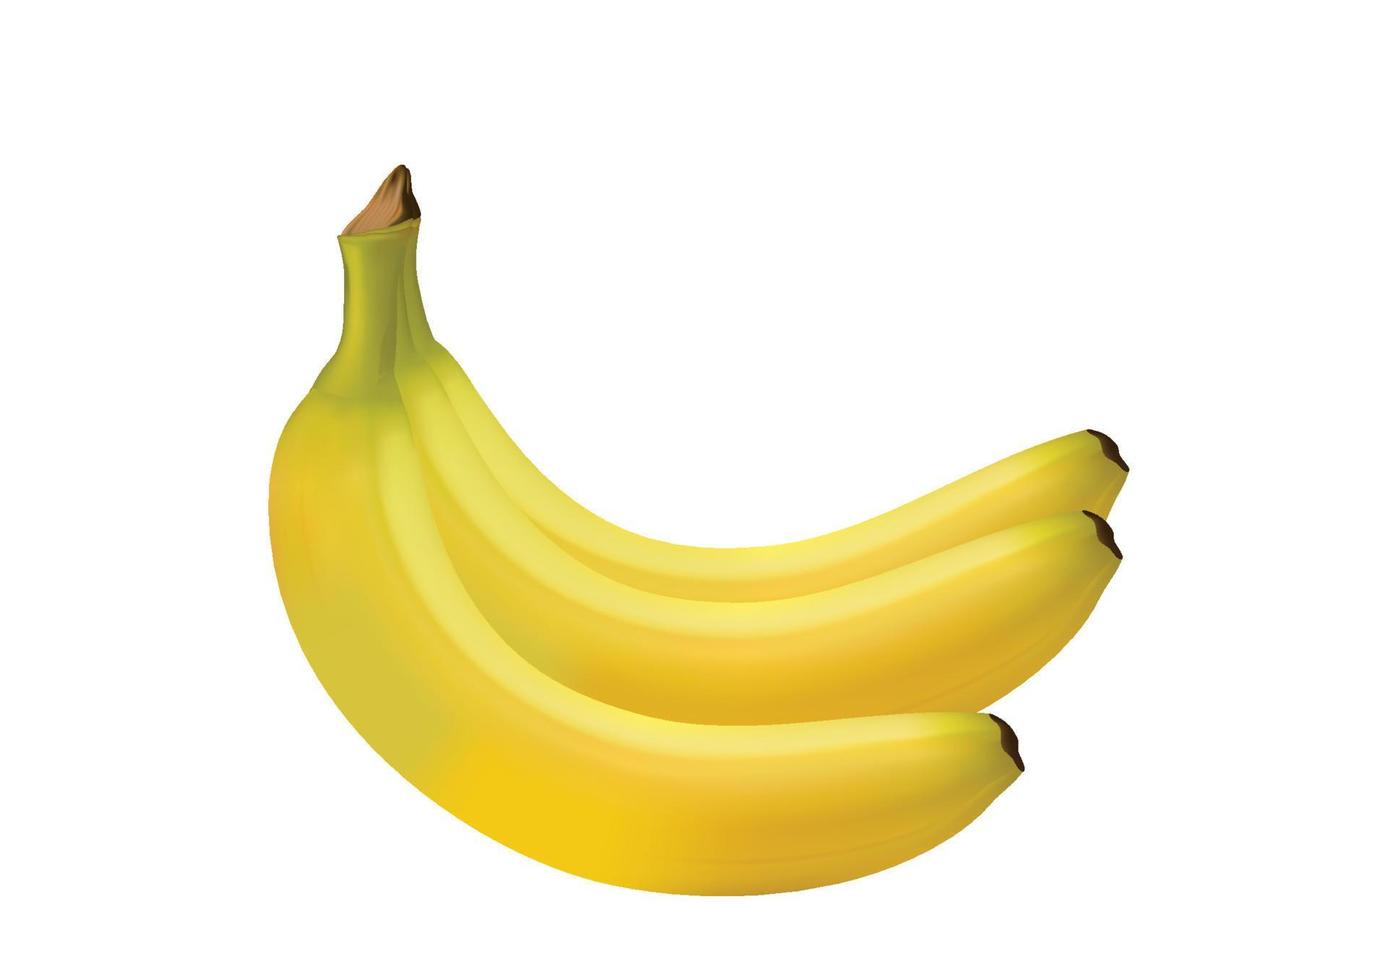 banane mature realistiche frutta gialla fresca per un'alimentazione sana i frutti dolci sono pieni di vitamine. vettore di illustrazione isolato